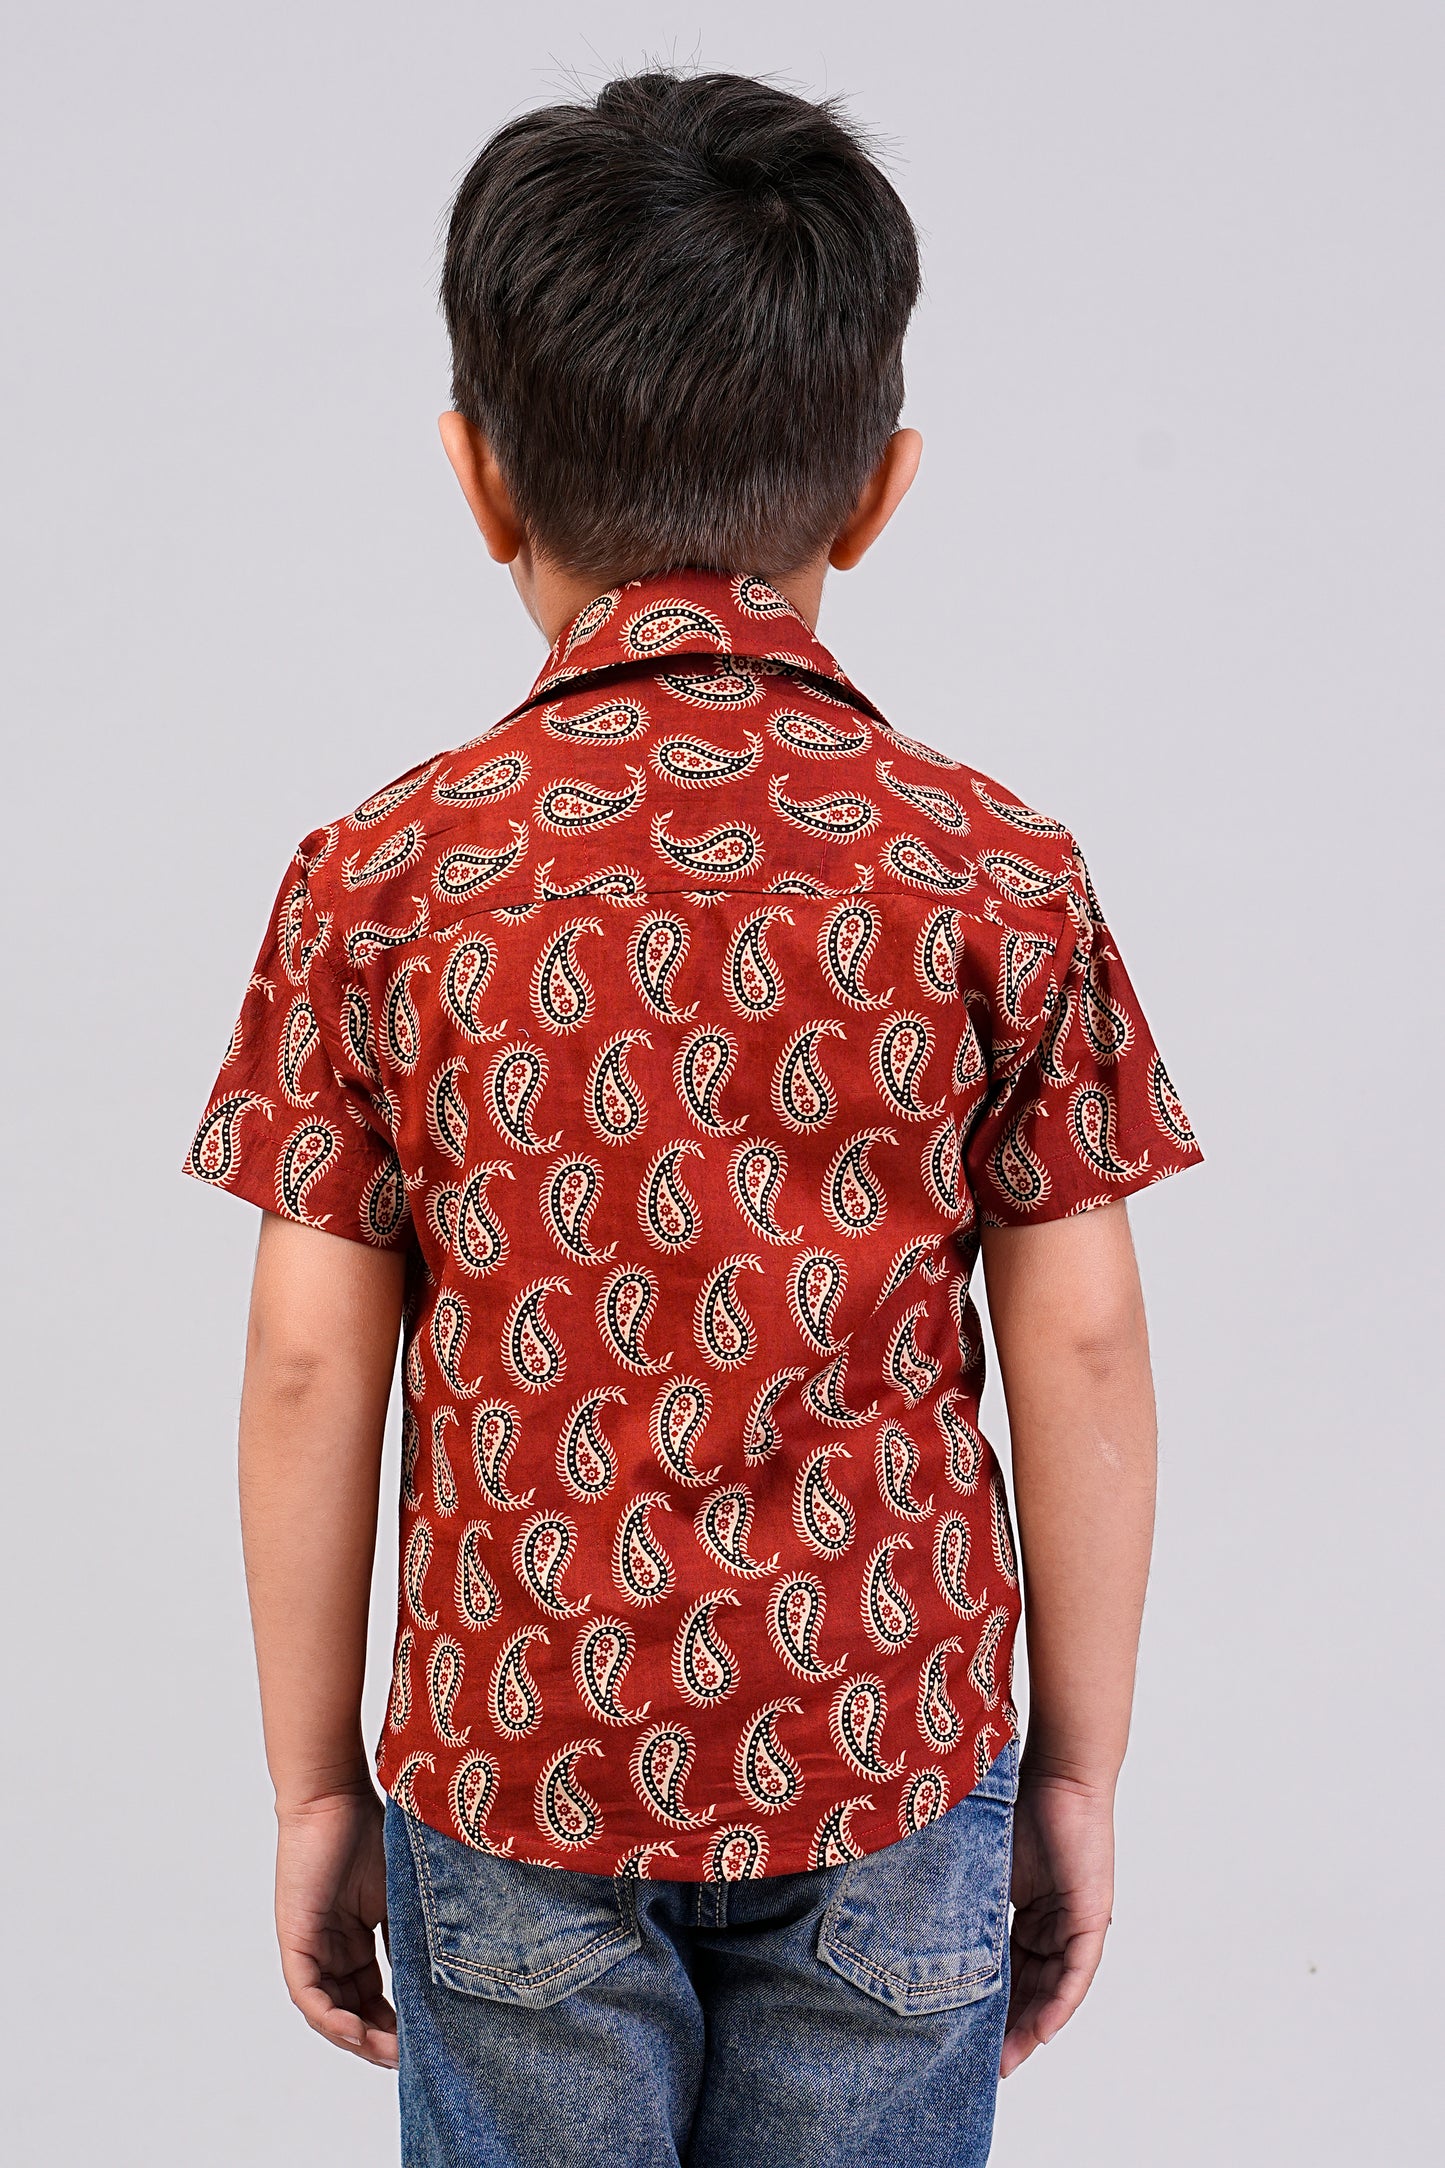 Boy's Red Paisley Printed Half-Sleeves Shirts